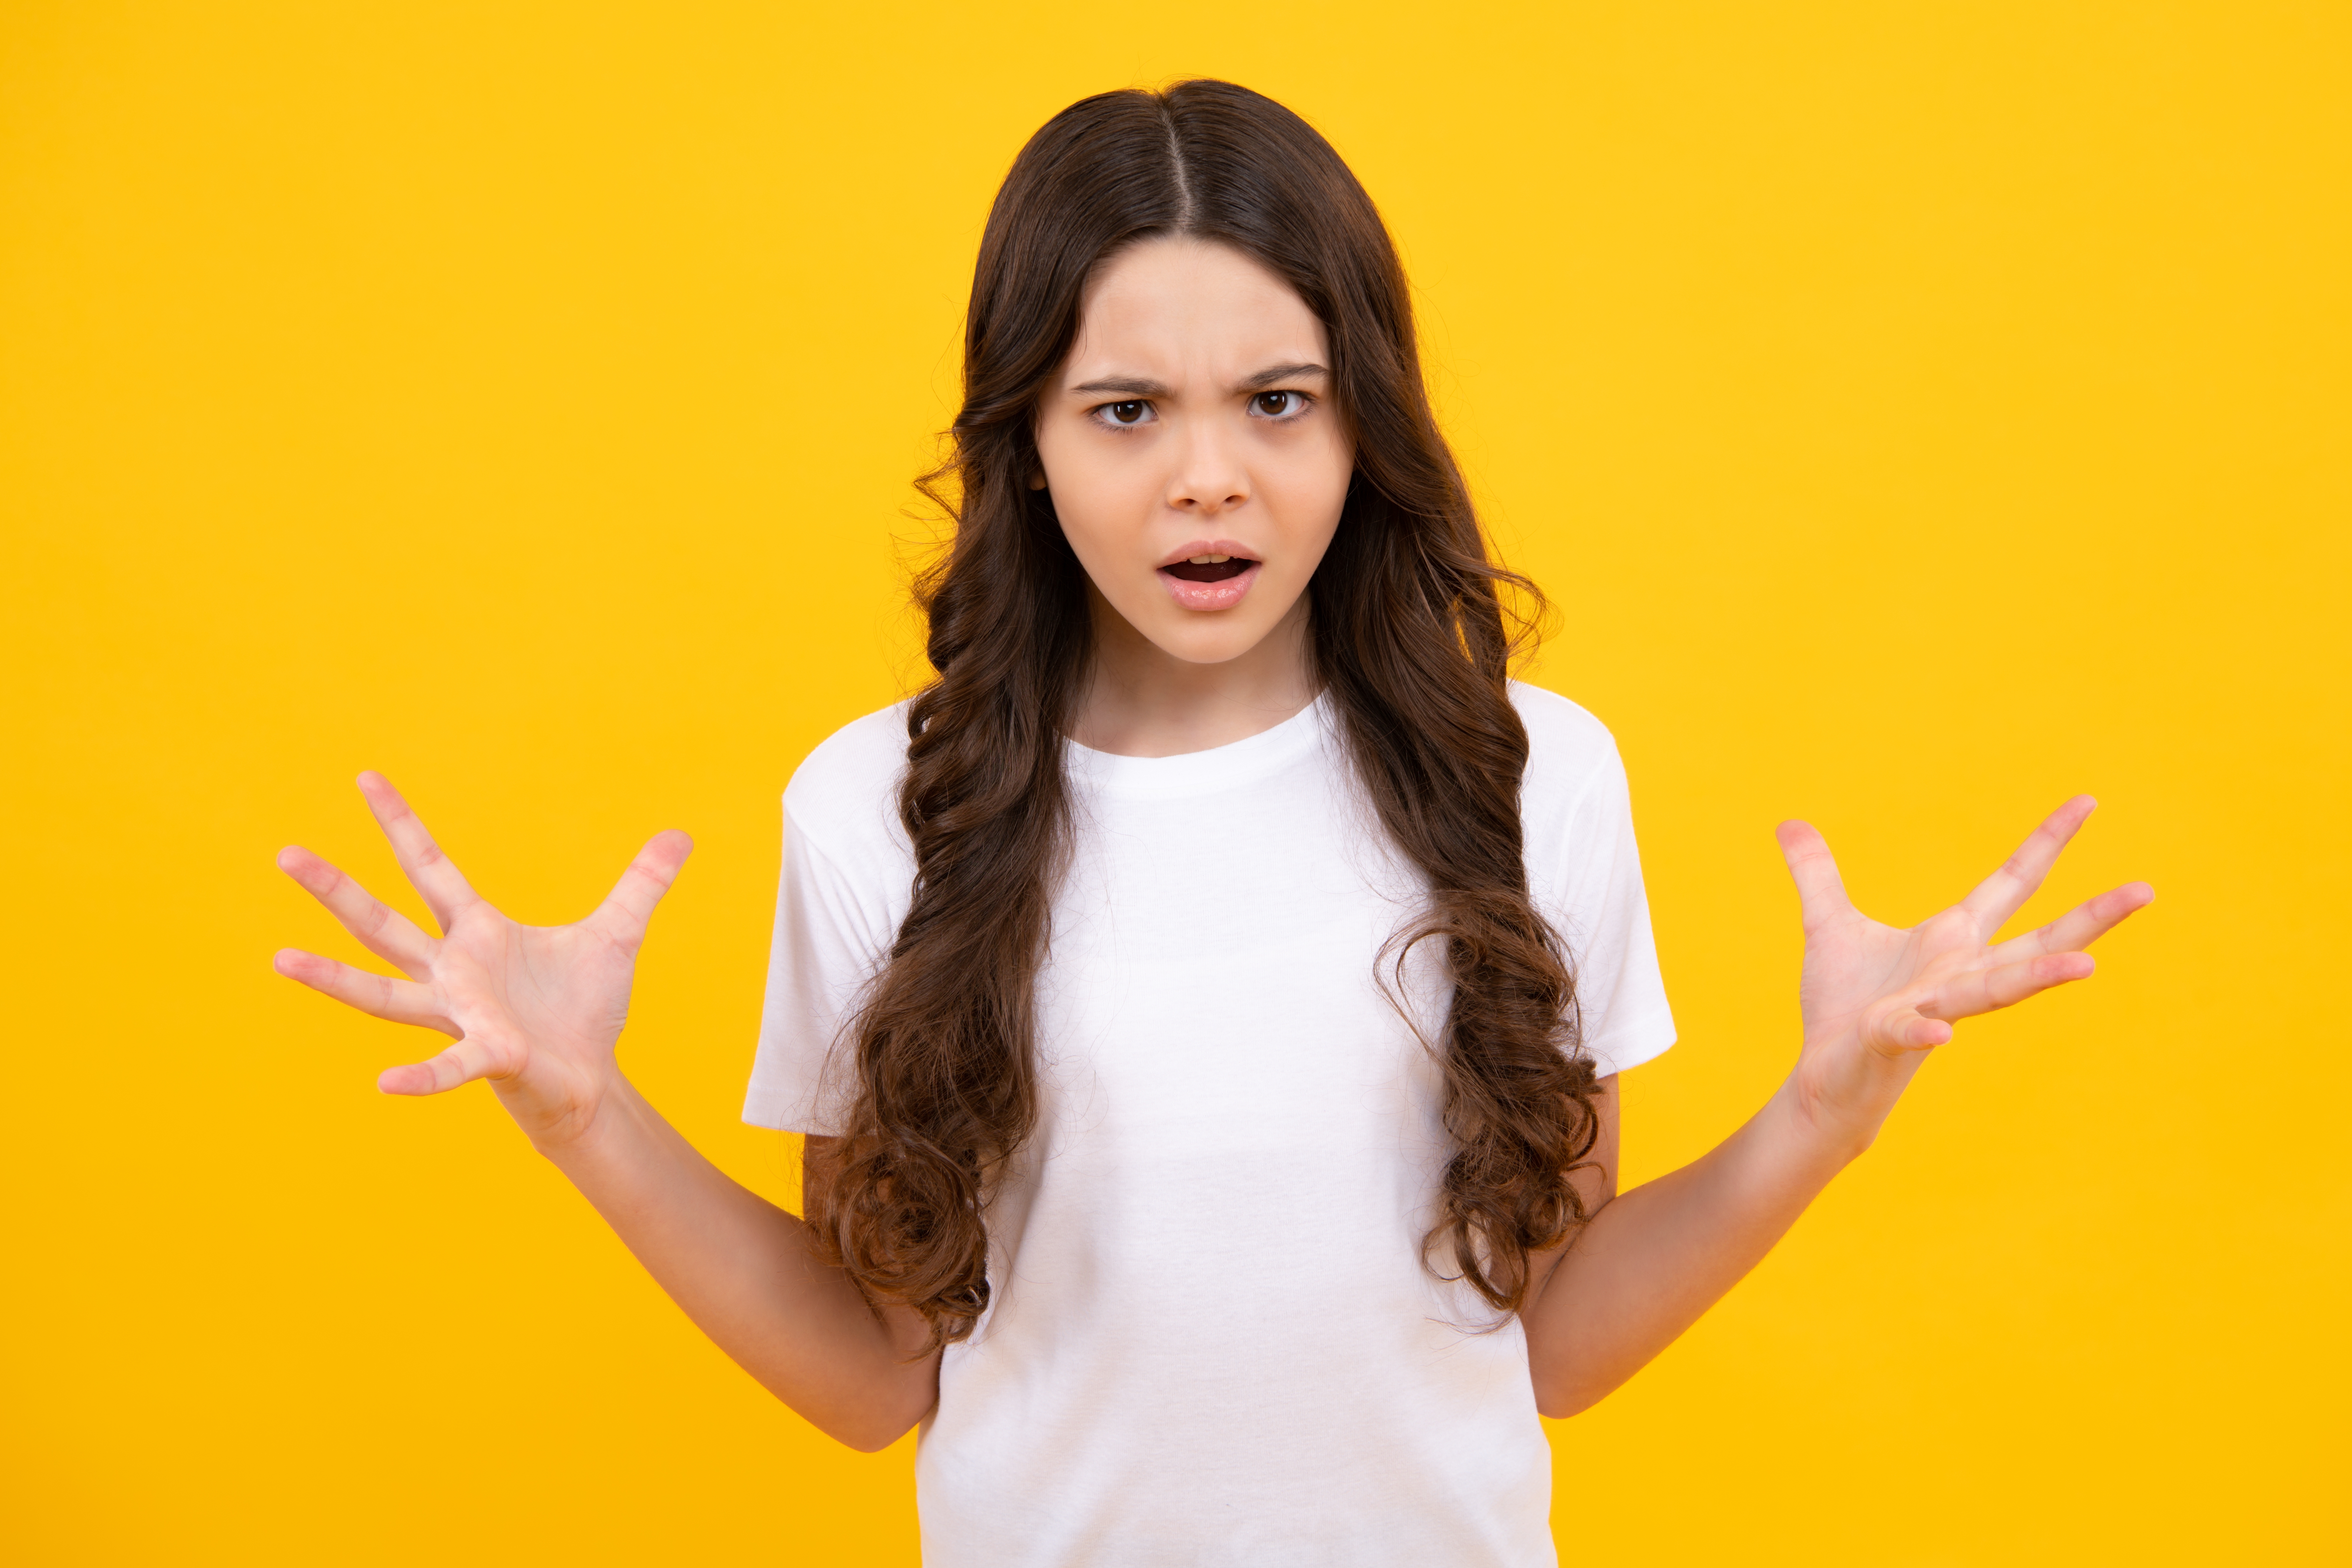 Une adolescente à l'air choqué et en colère | Source : Shutterstock